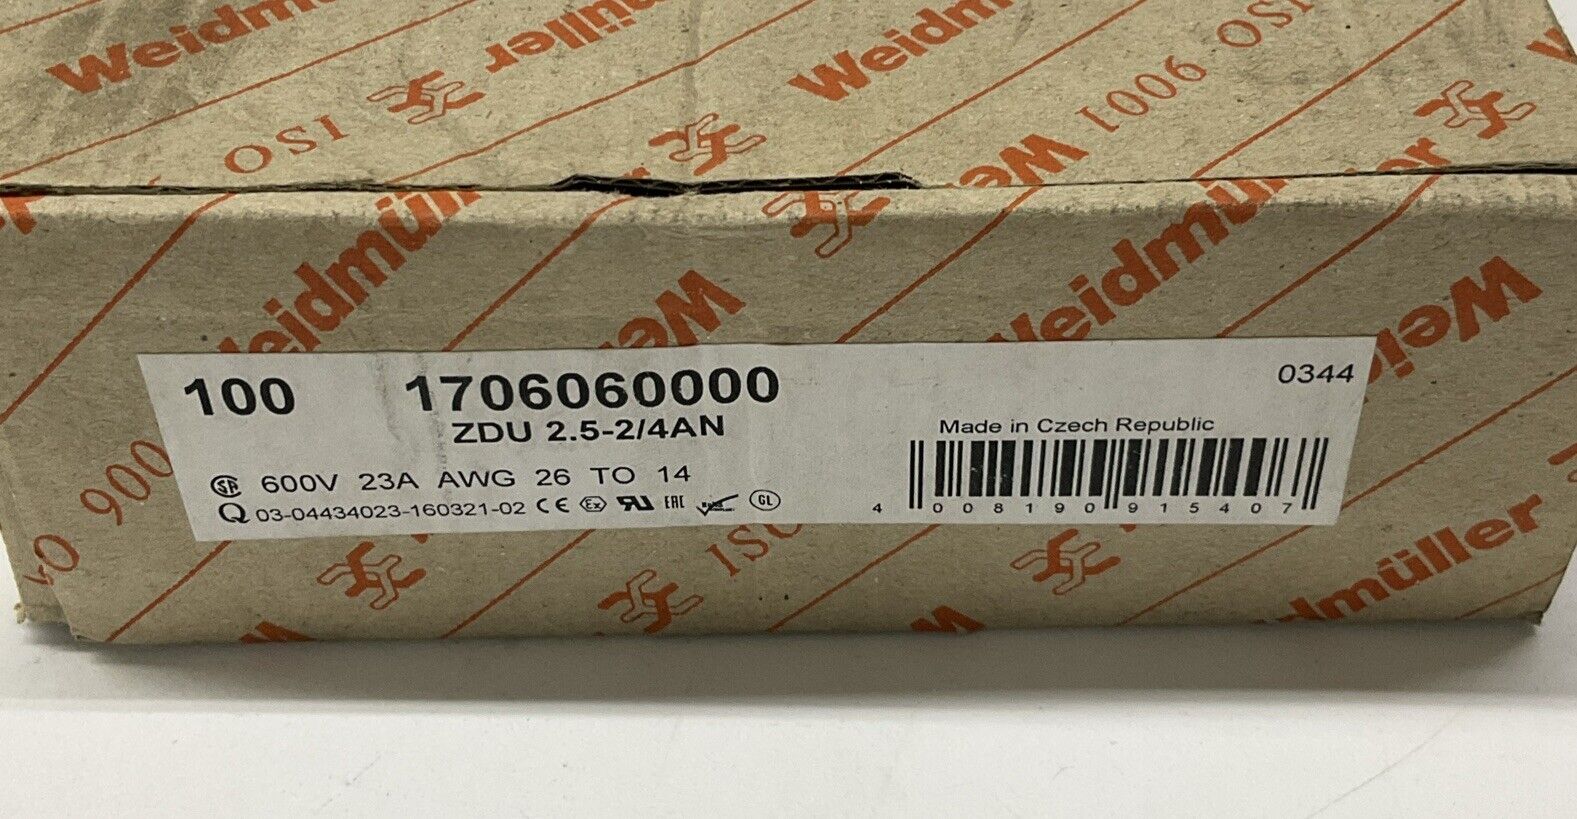 Weidmuller ZDU 2.5/4AN Box of 100 Tan Din Rail Wire Terminal 1706060000 (SH107)